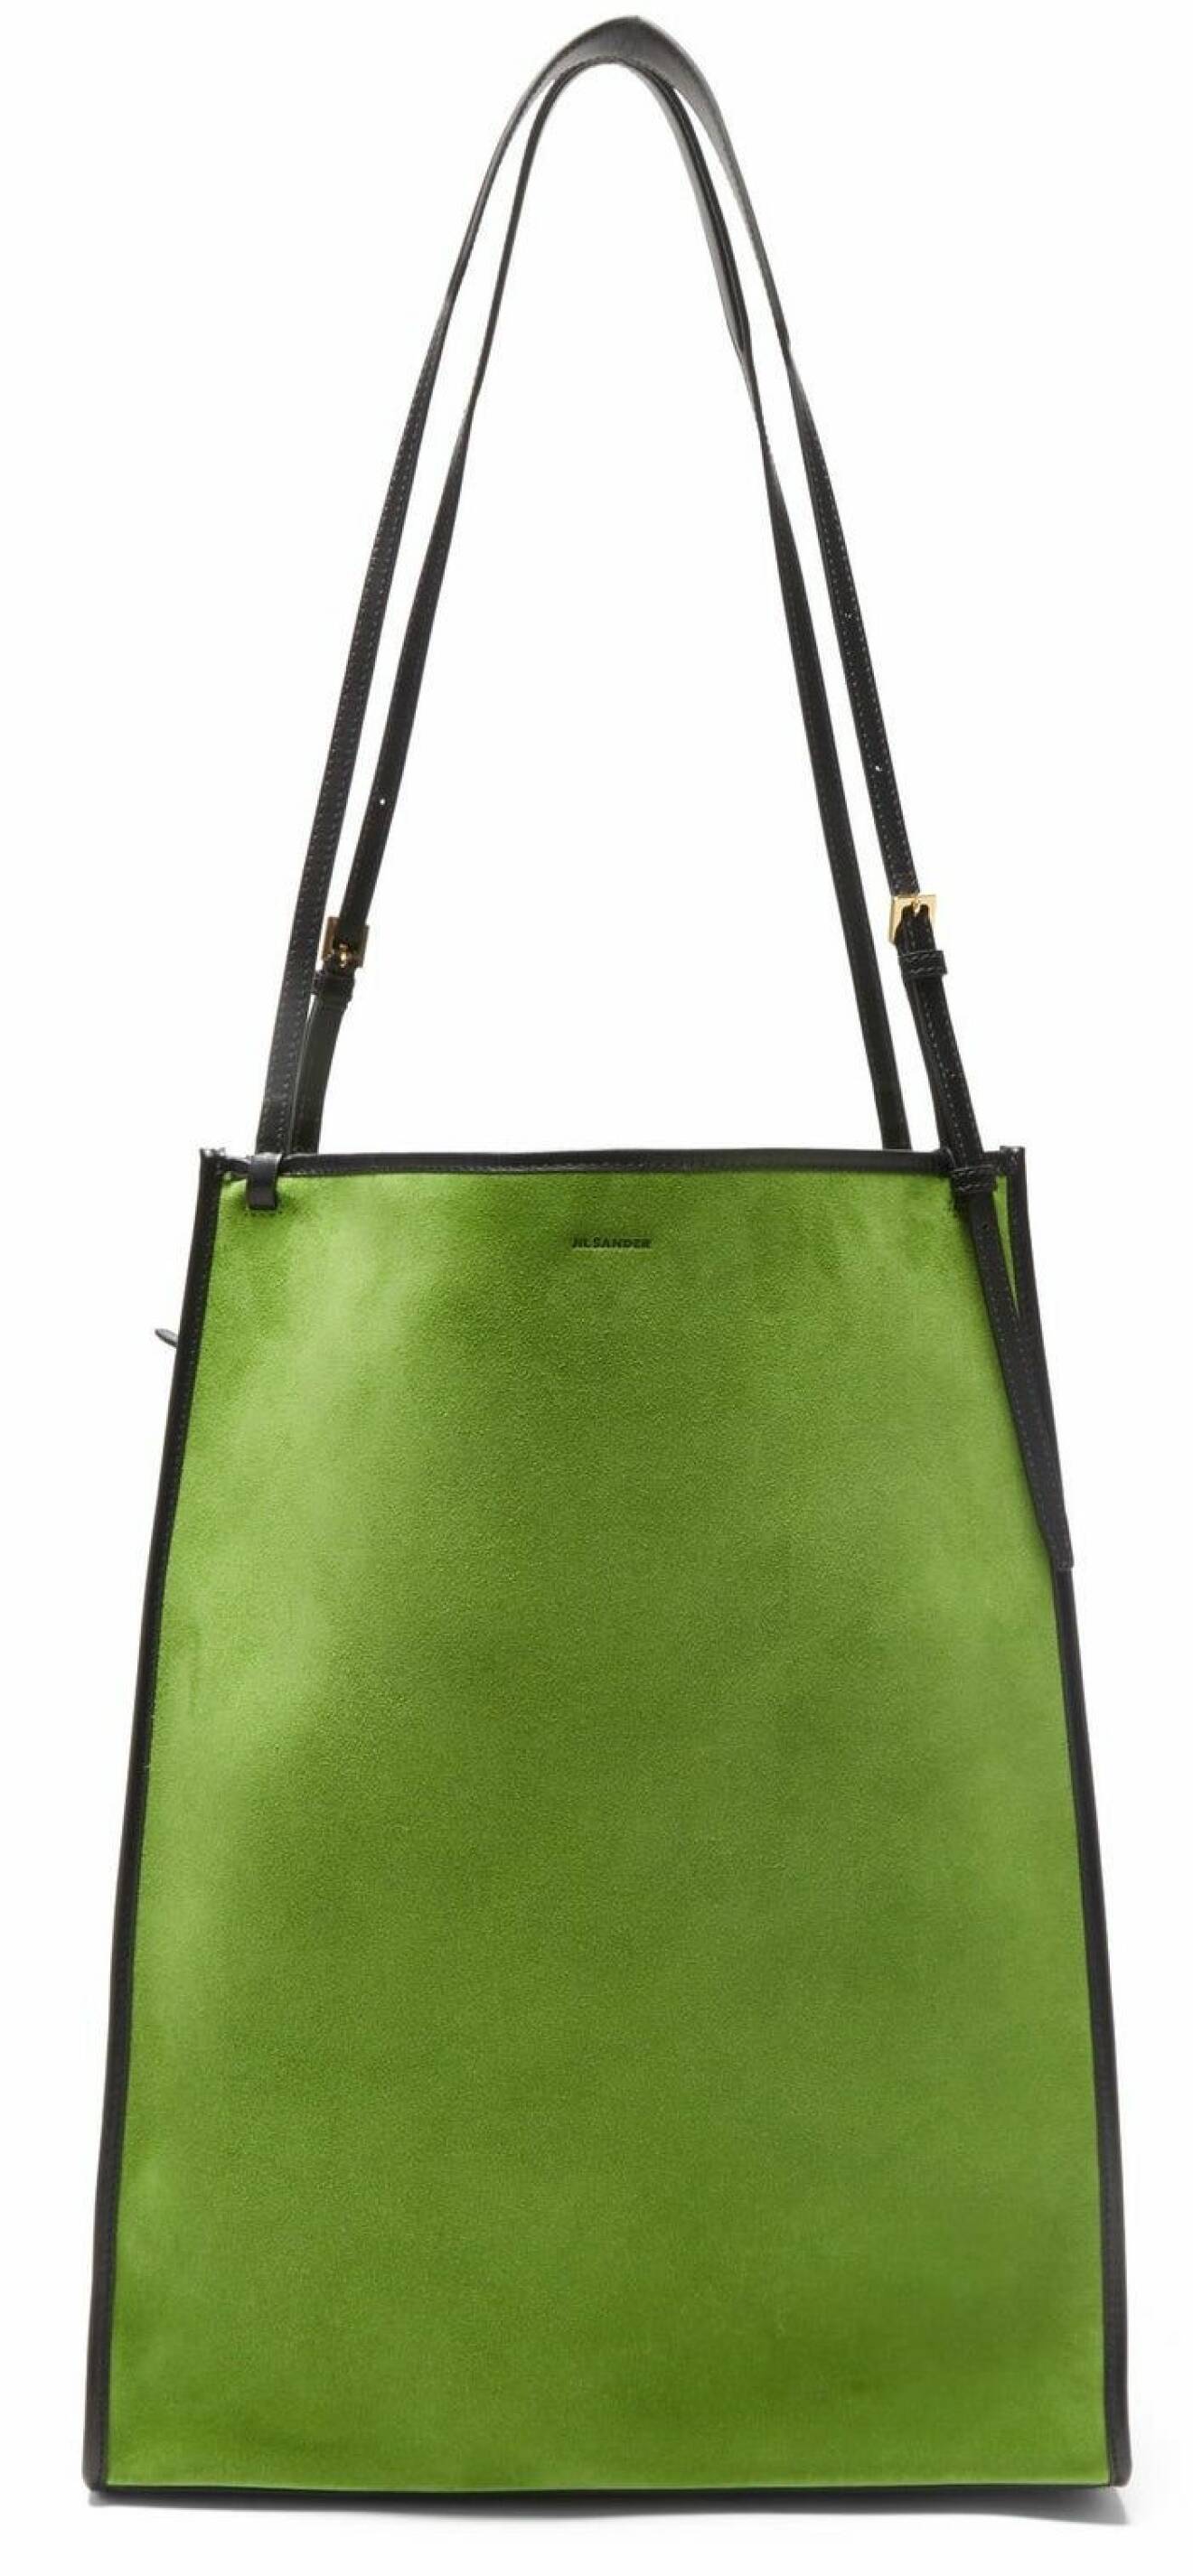 grön väskan från Jil Sander med svarta detaljer.